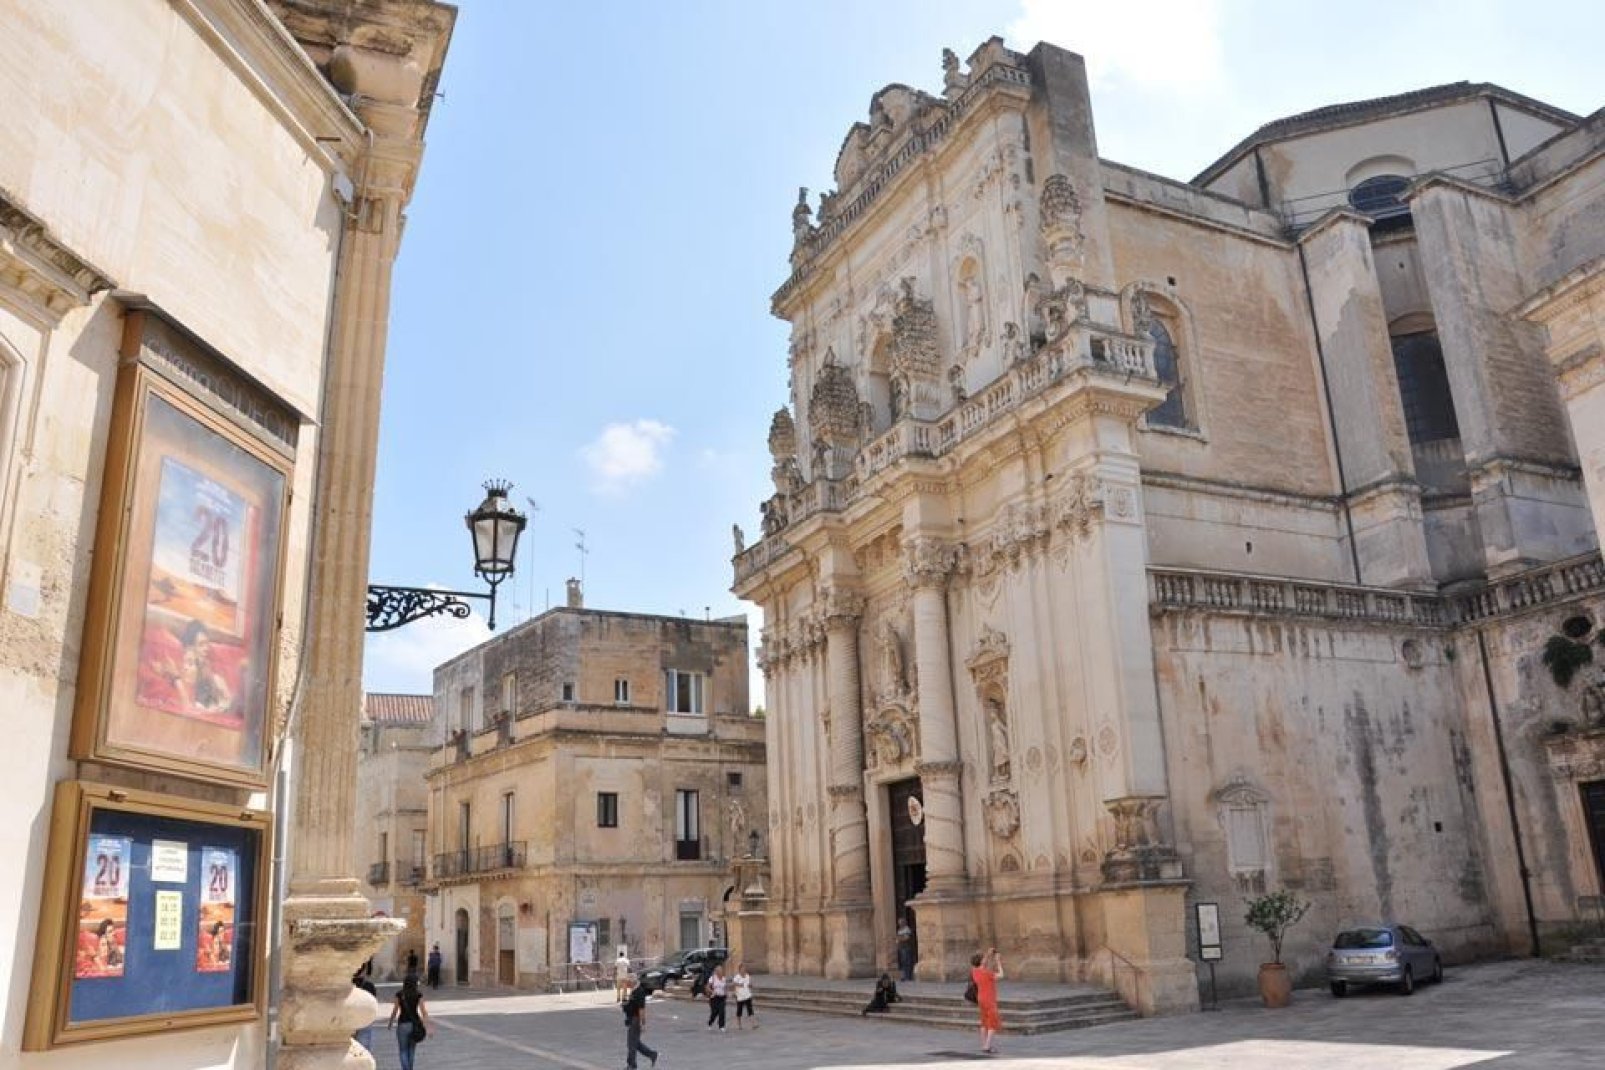 La catedral de Lecce está situada en la plaza con el mismo nombre. Cerca, el obispado y el seminario, de estilo barroco.